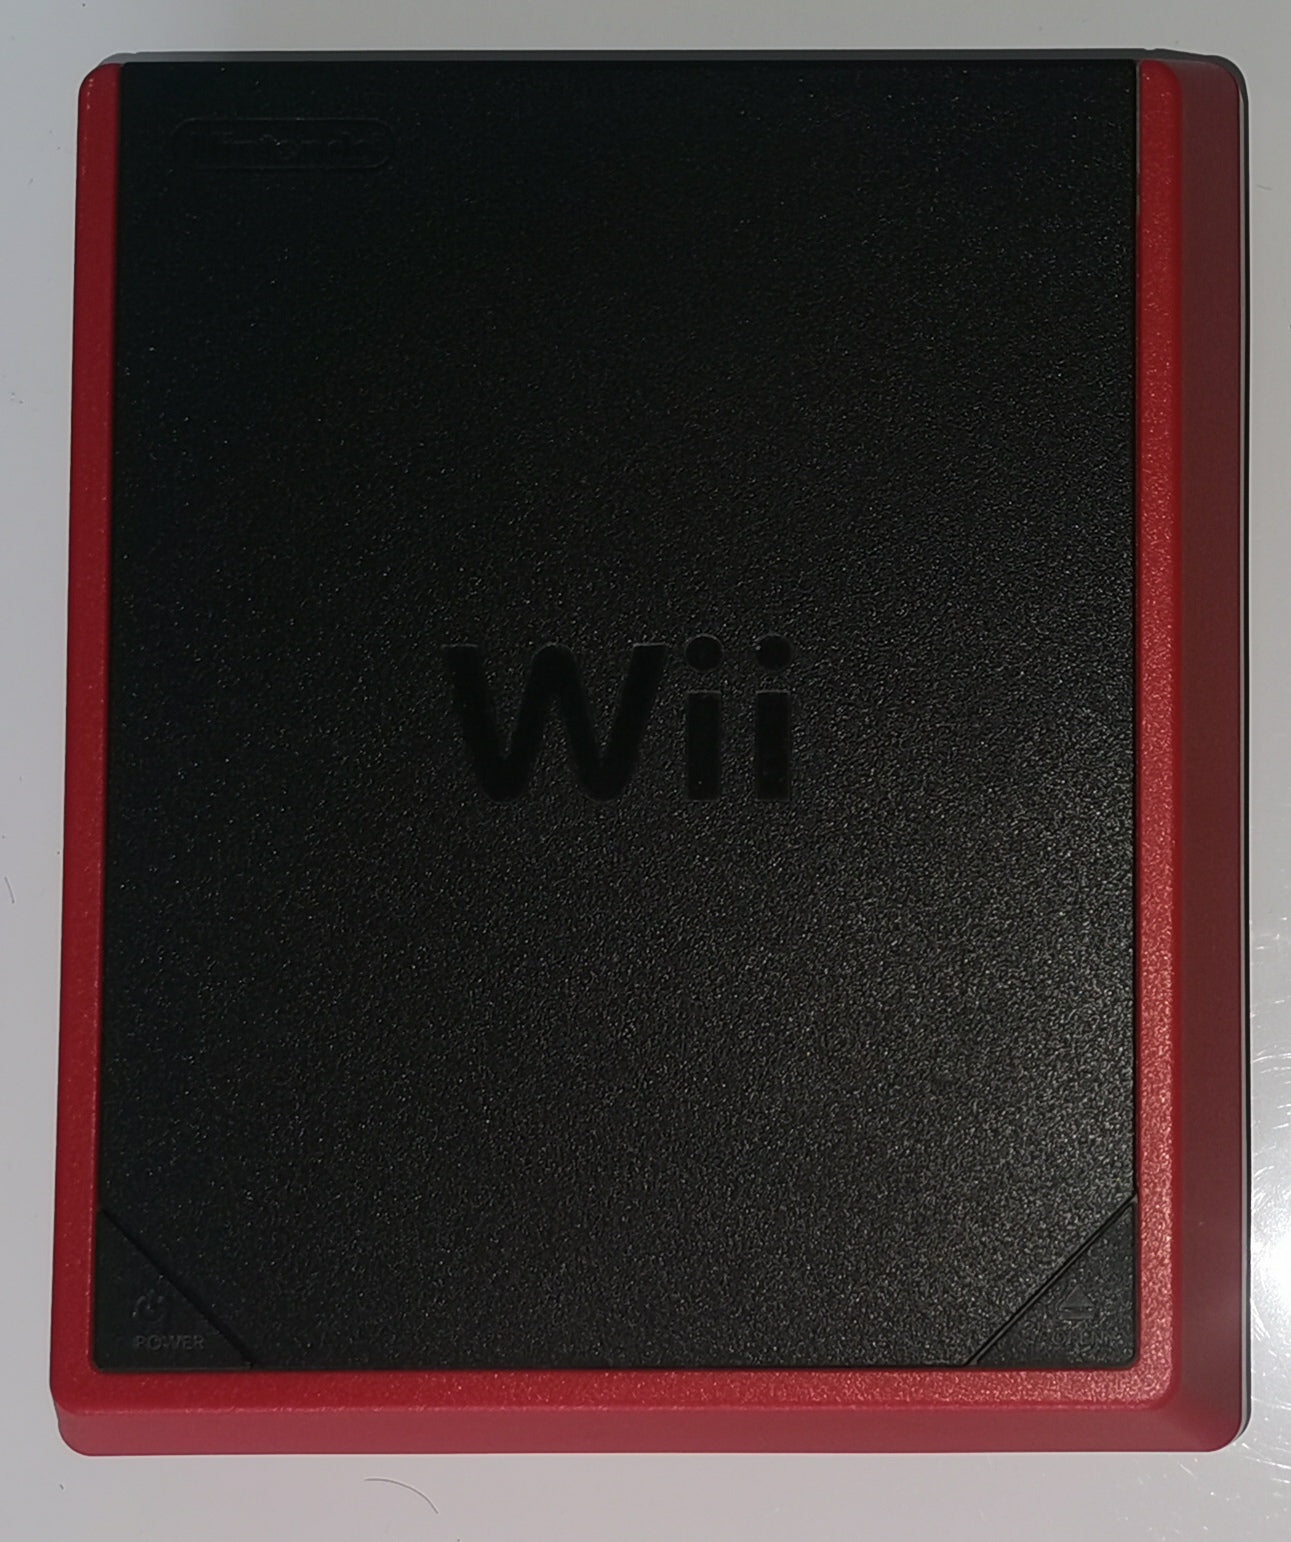 Nintendo Wii Mini Konsole nur Konsole ohne Zubehoer in Originalverpackung [Sehr Gut]